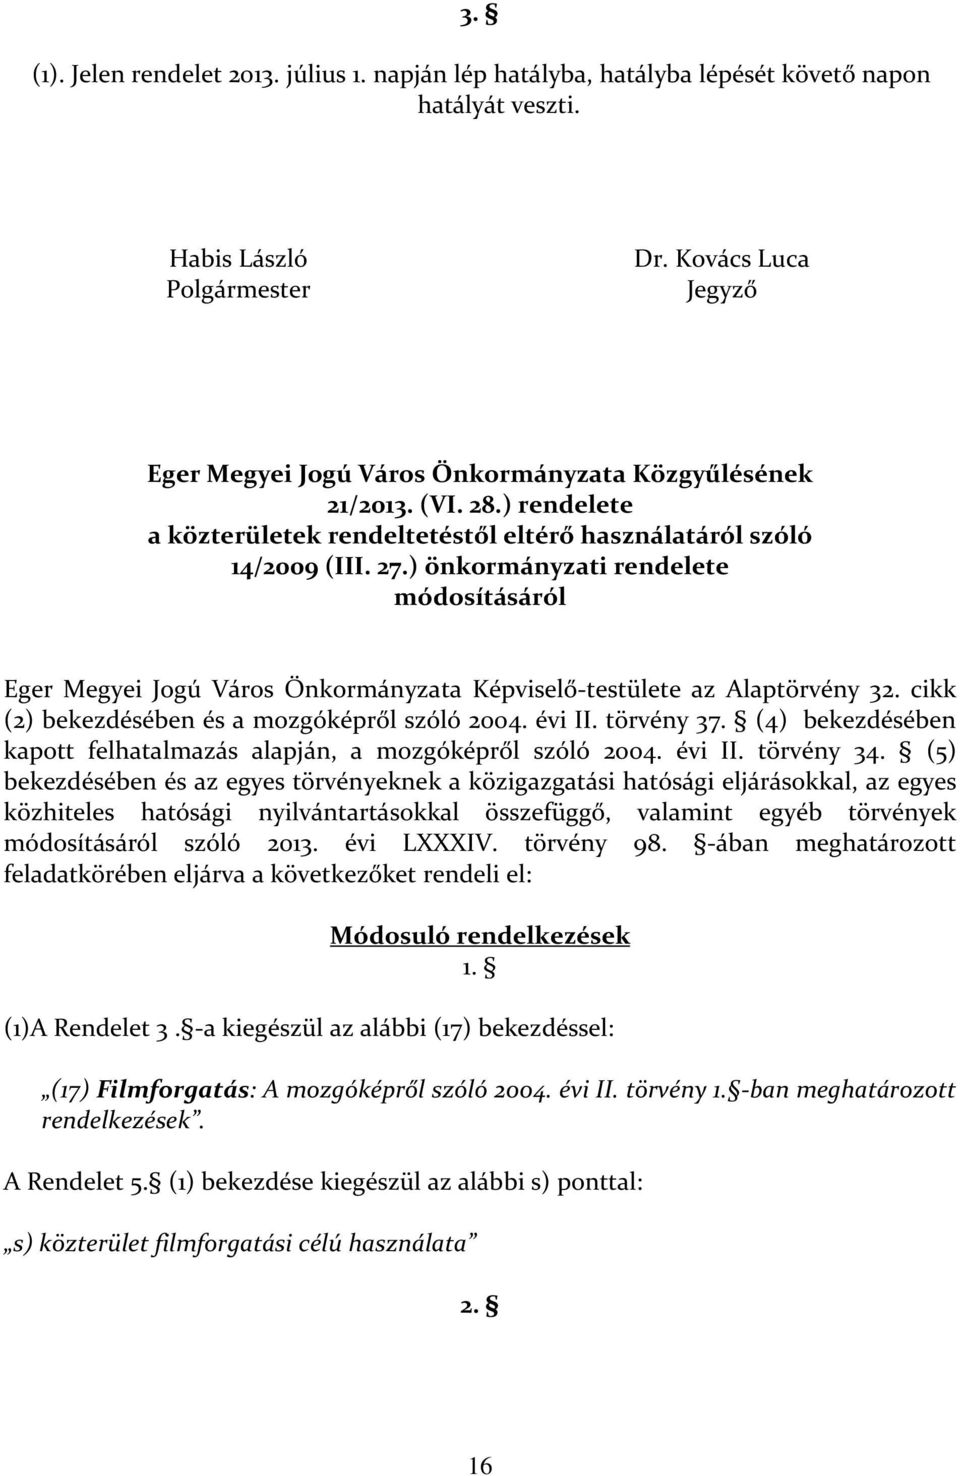 ) önkormányzati rendelete módosításáról Eger Megyei Jogú Város Önkormányzata Képviselő-testülete az Alaptörvény 32. cikk (2) bekezdésében és a mozgóképről szóló 2004. évi II. törvény 37.